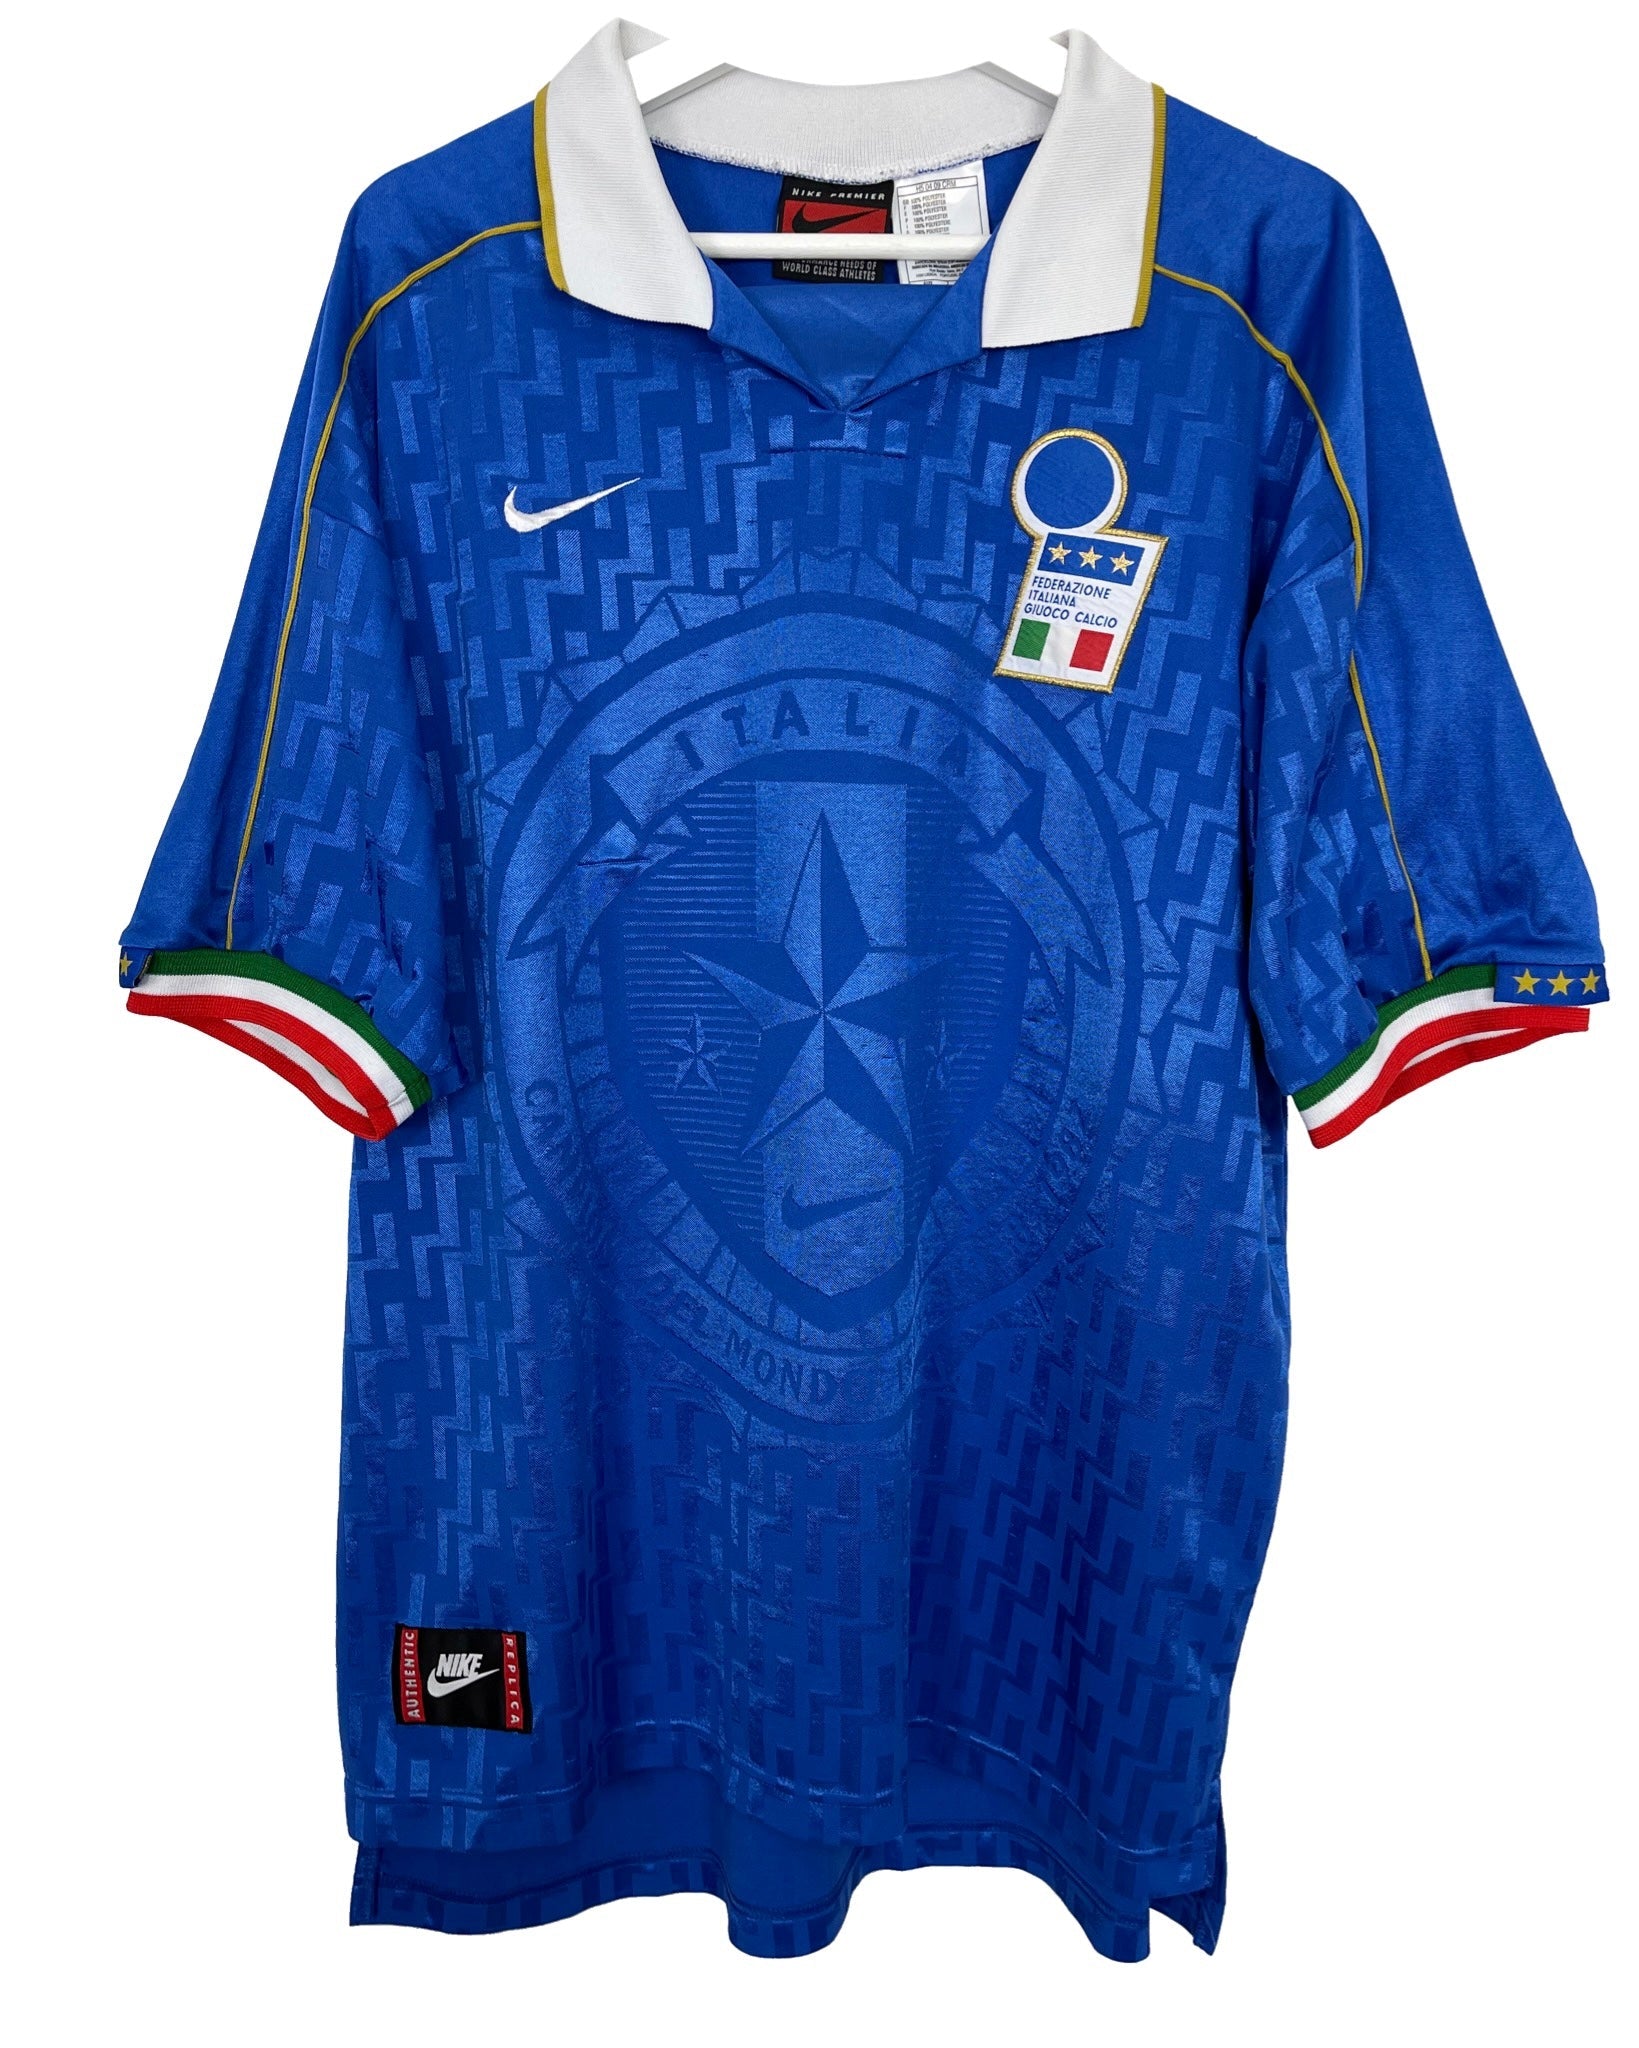  Maillot de football Nike Maillot de football - Italia 95' 96' - XL - PLOMOSTORE